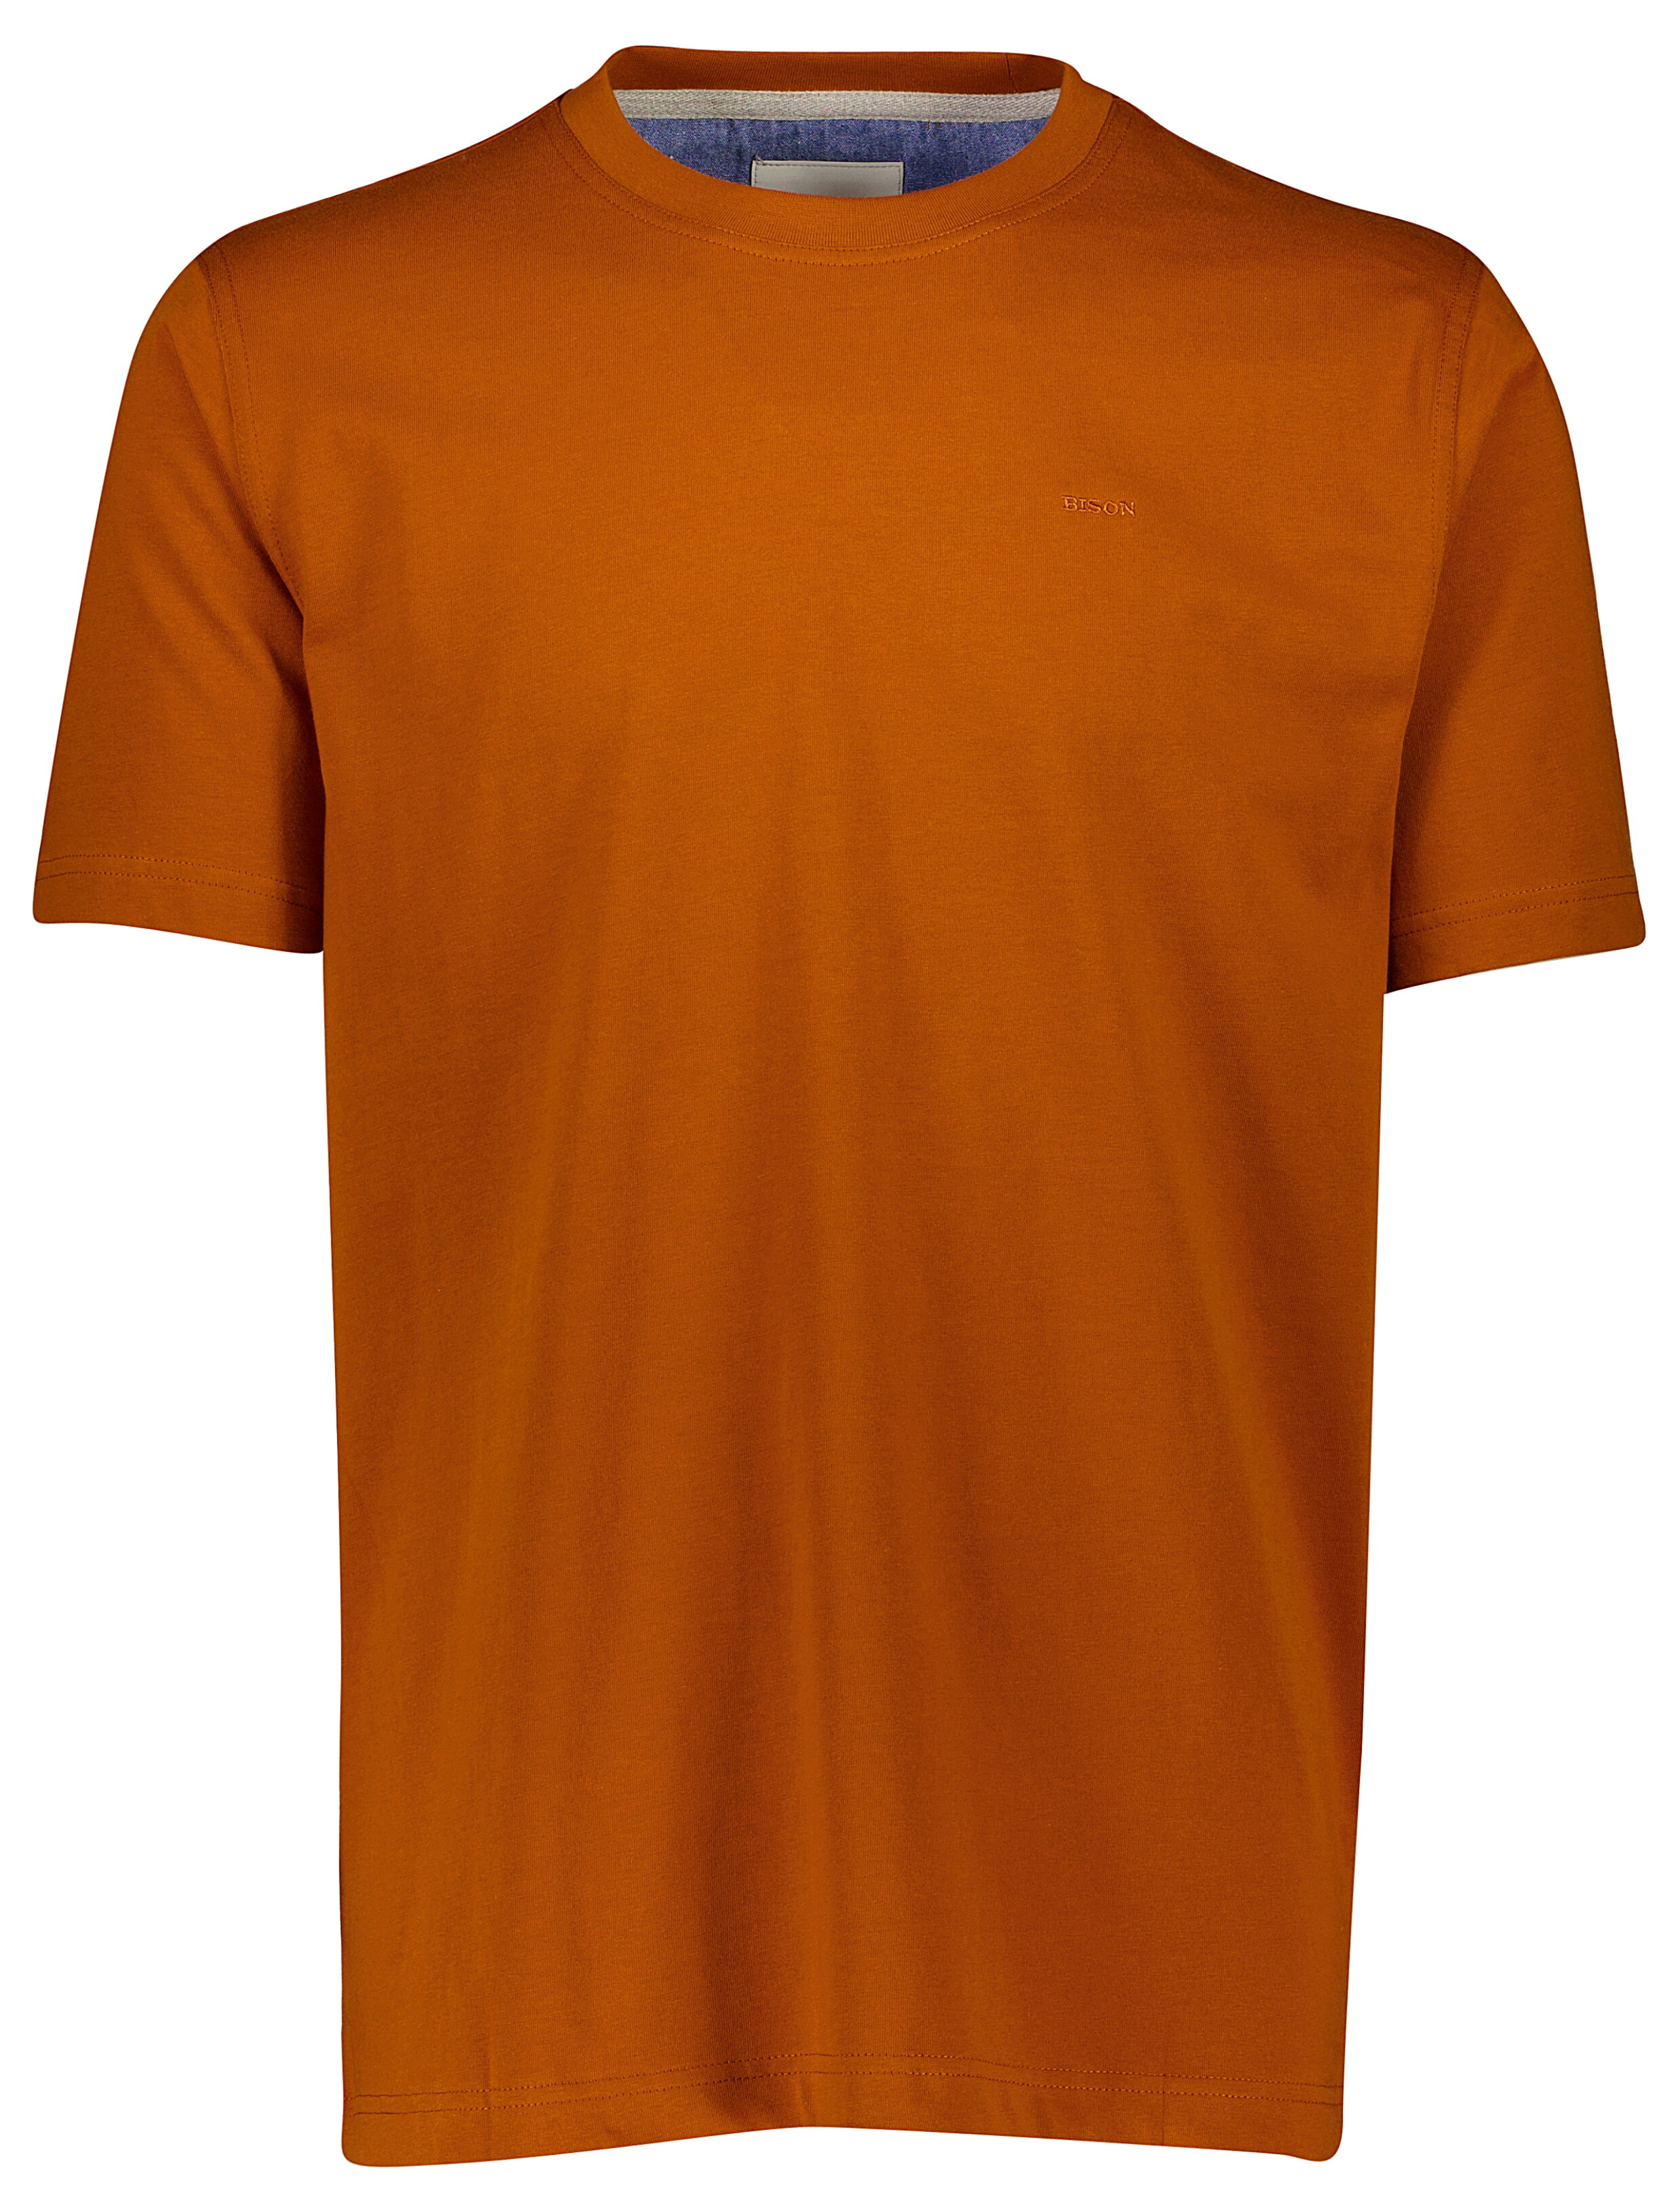 Bison T-shirt orange / dk orange